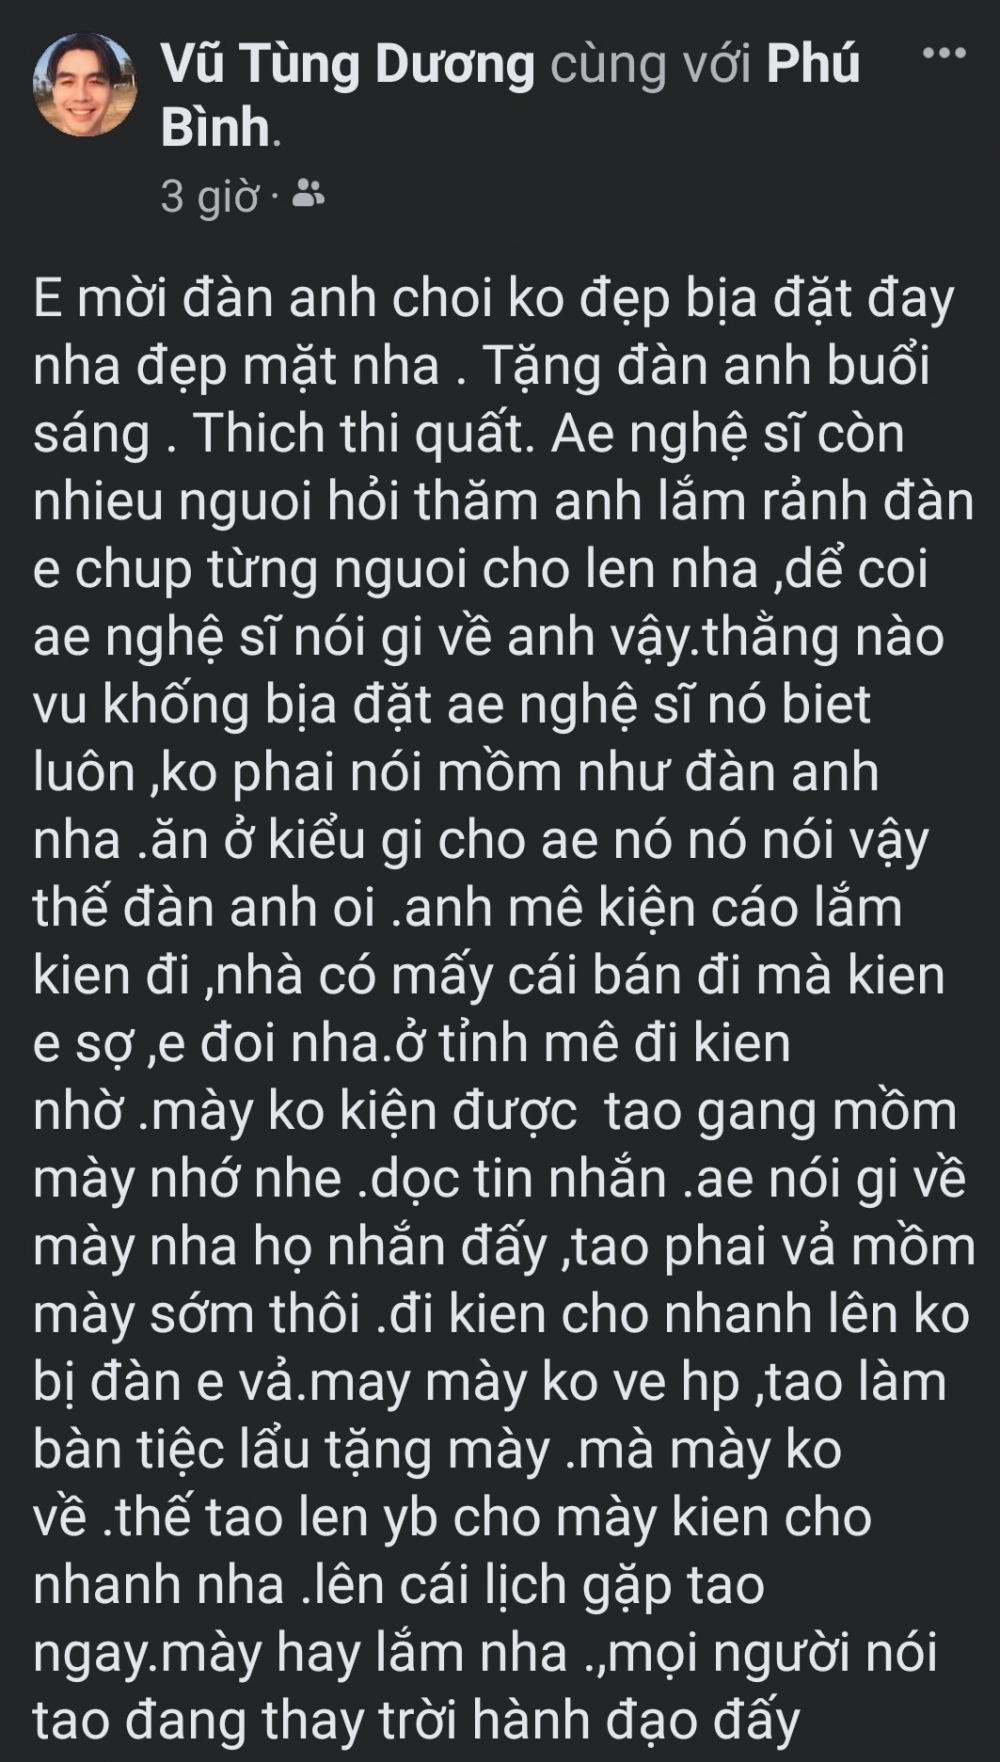 Nghệ sĩ ưu tú Vũ Tùng Dương bị tố vì livestream trên Facebook xúc phạm đồng nghiệp